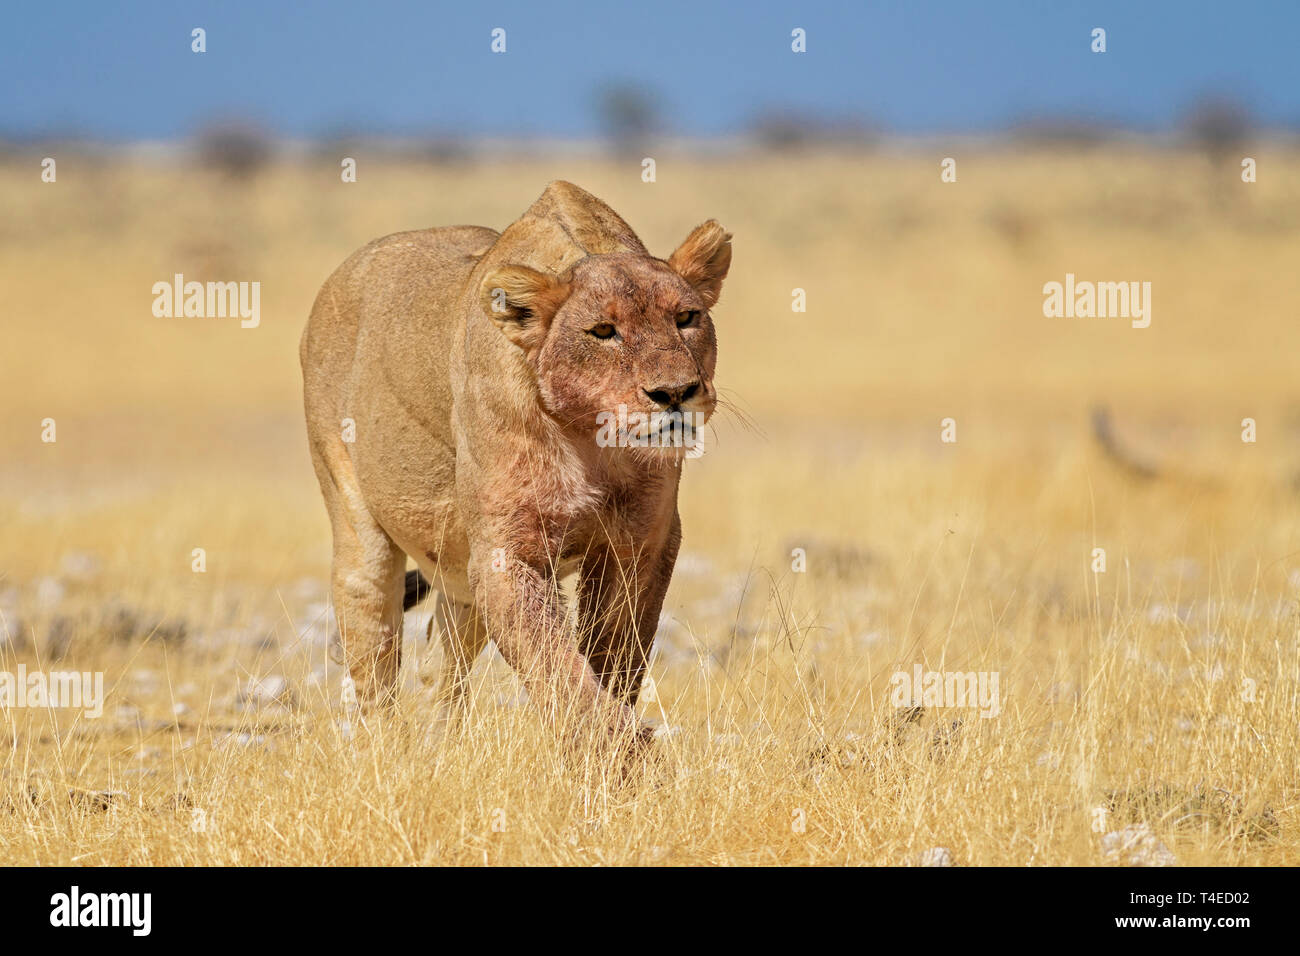 Von Lion Panthera leo, Wappentier aus afrikanischen Savannen, Etosha National Park, Namibia. Stockfoto